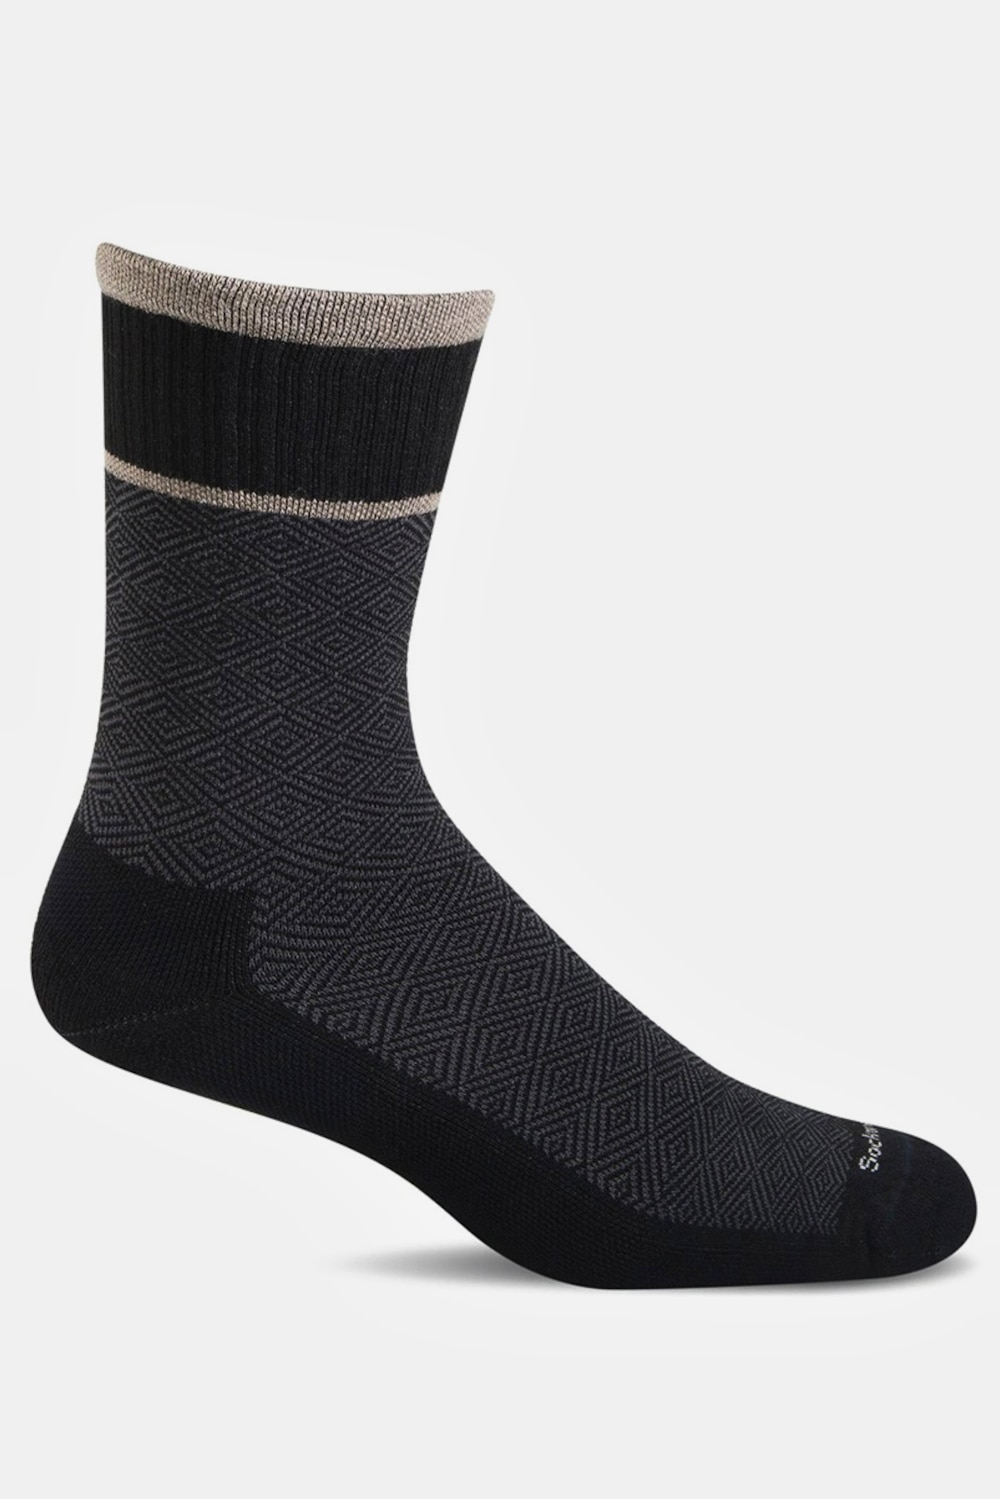 grandes tailles chaussettes pour épine calcanéenne, hommes, noir, taille: 44-46, laine/viscose/fibres synthétiques, jp1880